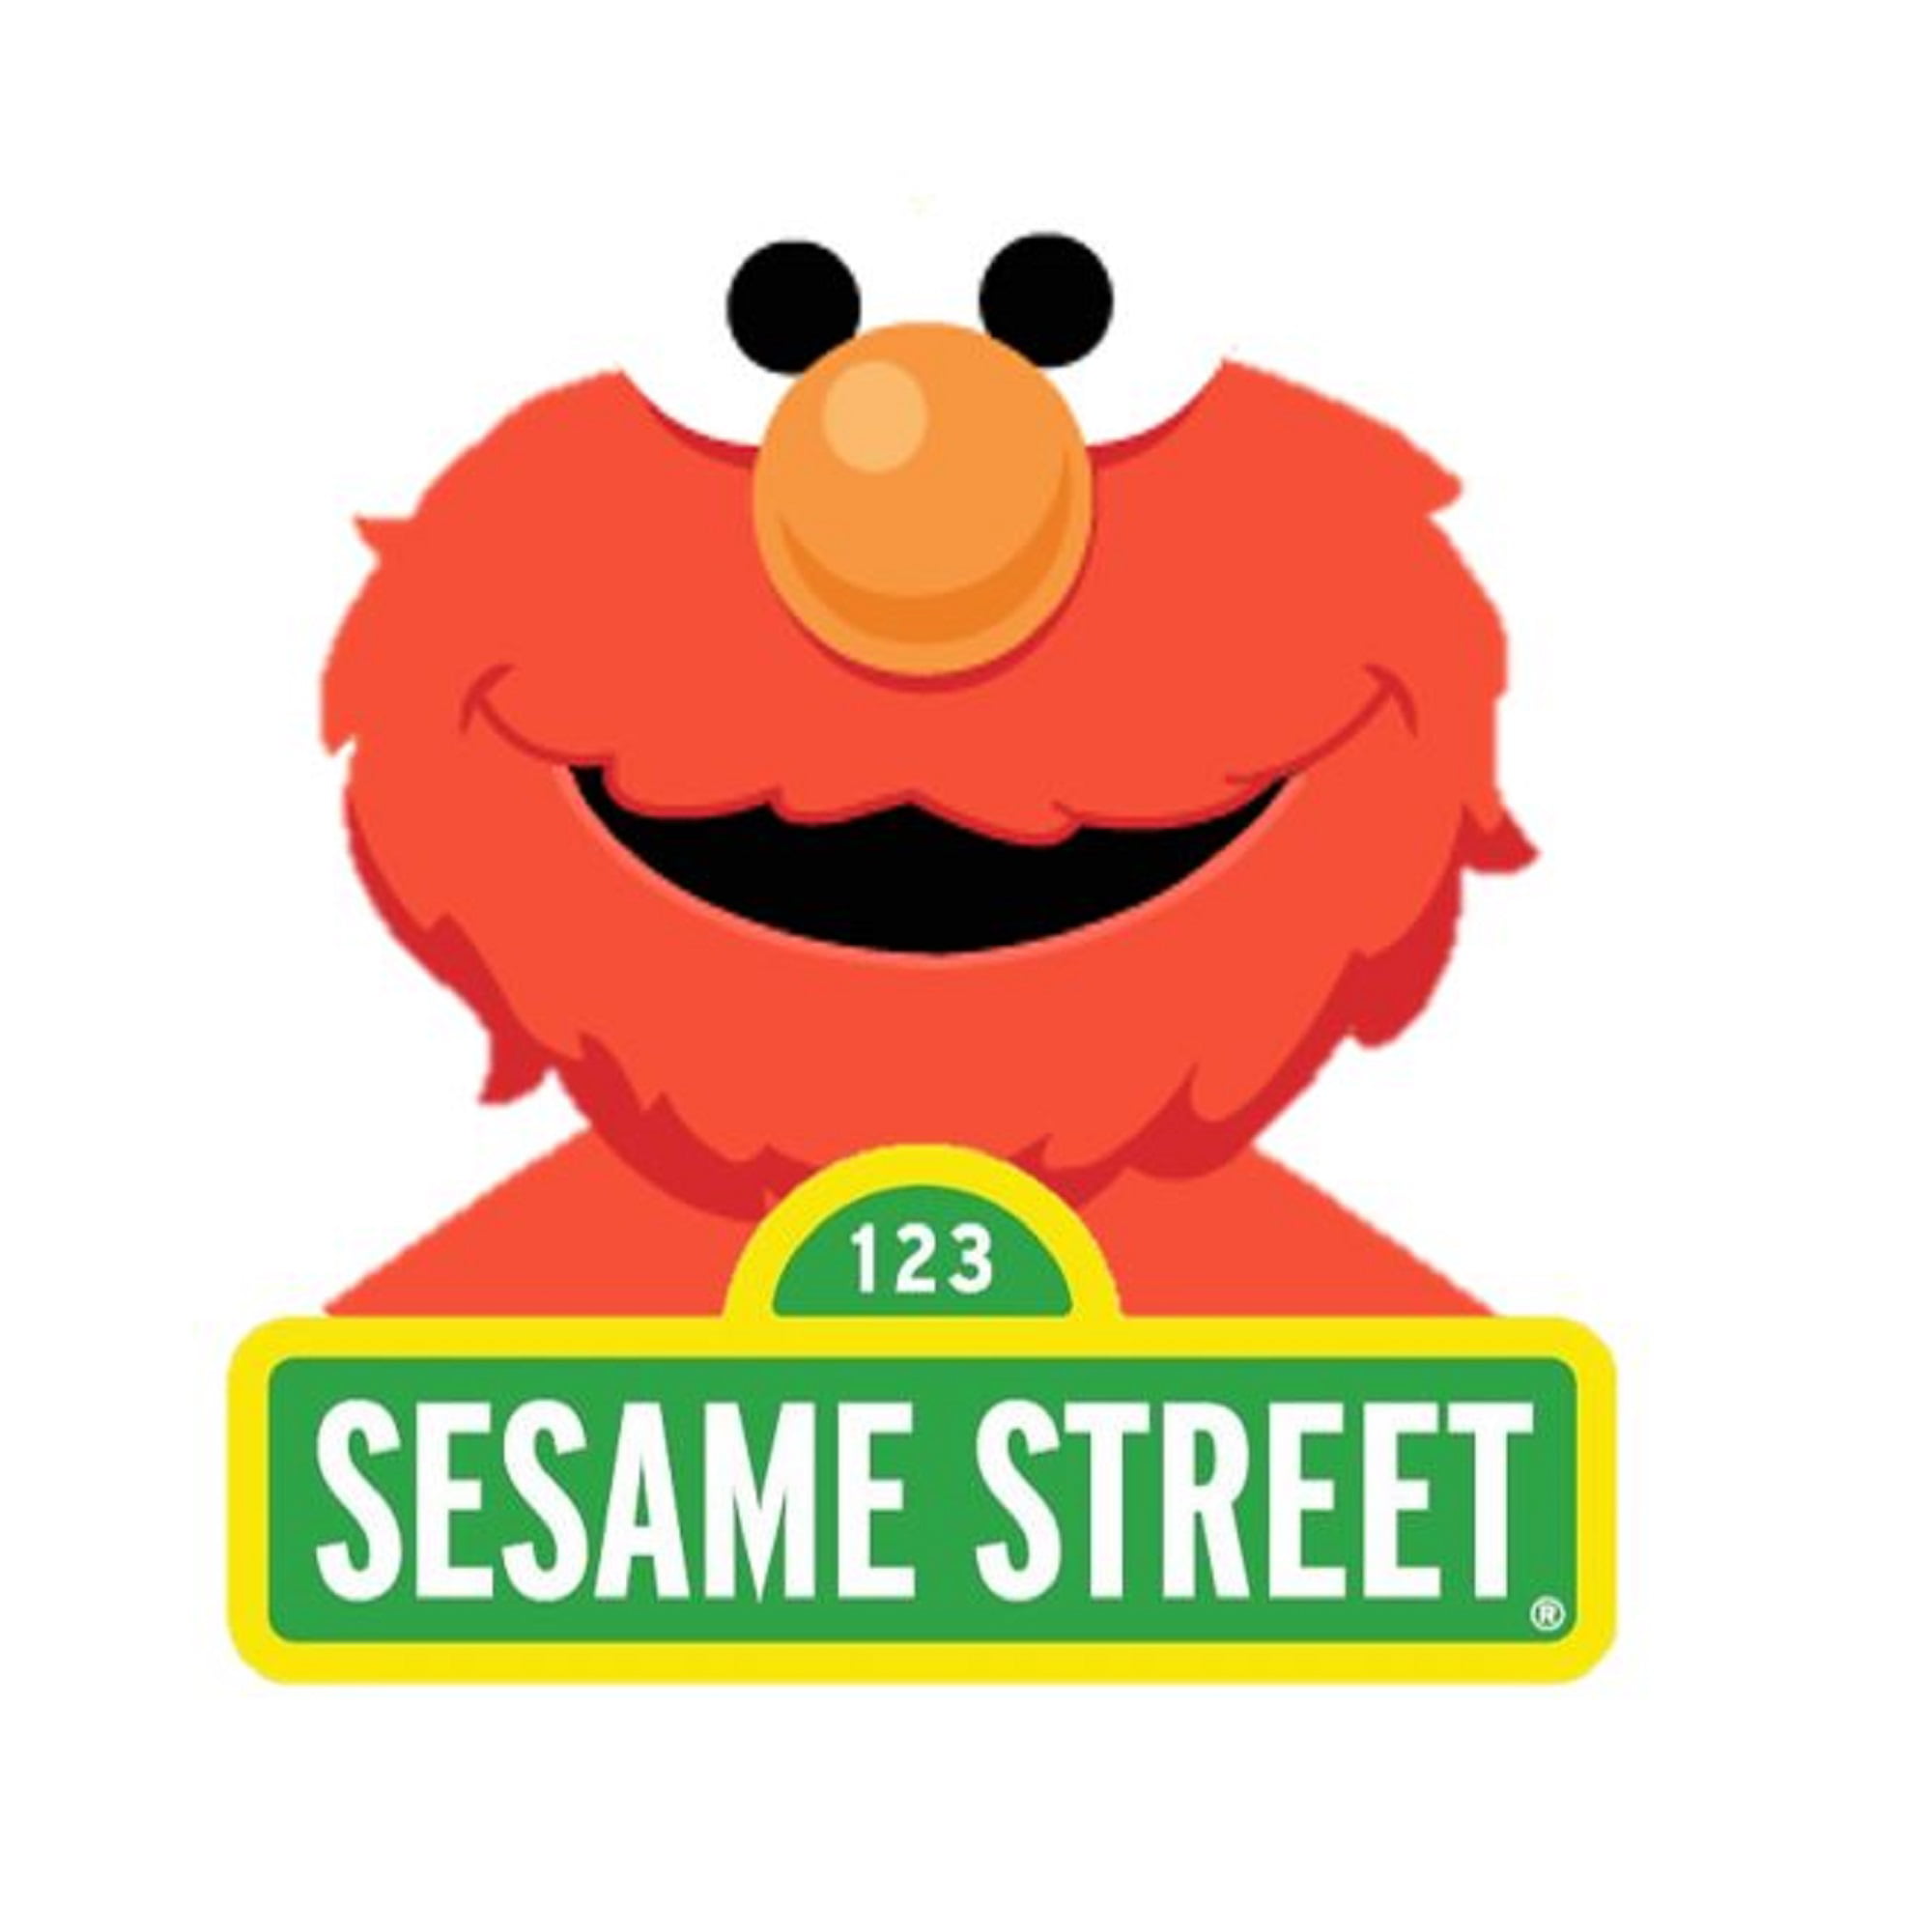 Sesame Street Elmo Upholstered Chair